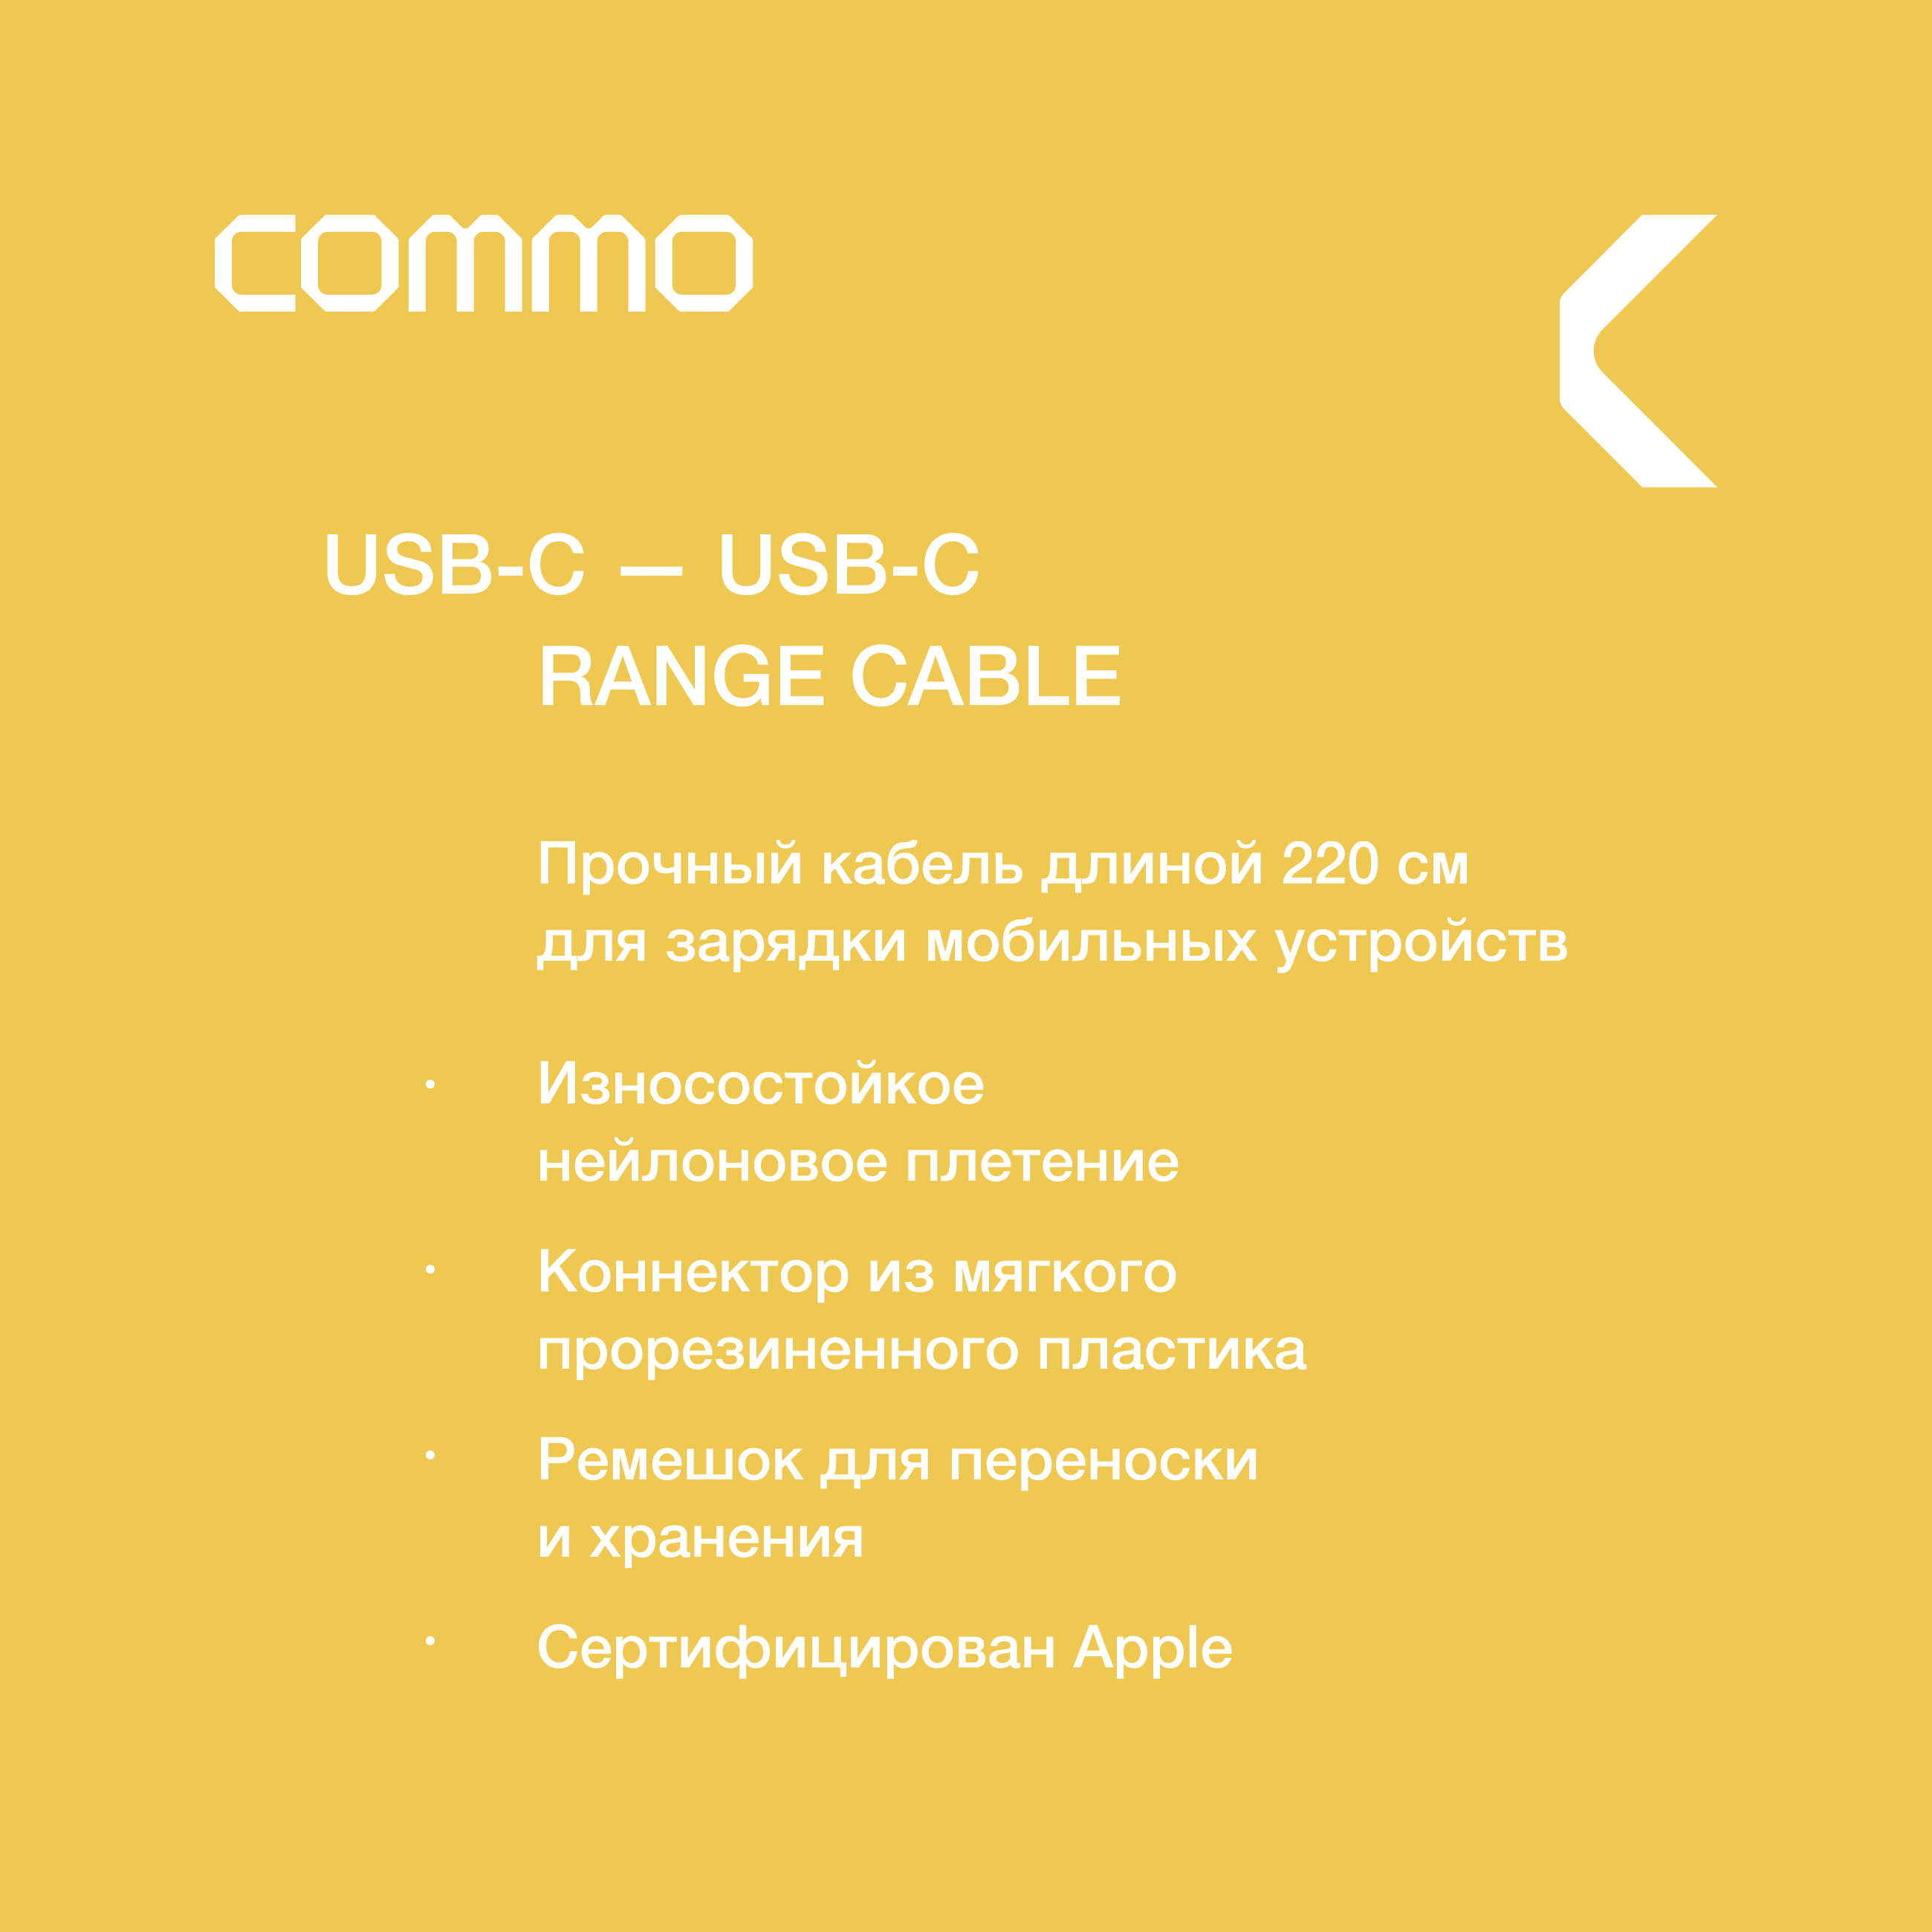 Кабель COMMO Range Cable USB-C — USB-C 2.2 м, Light Gray